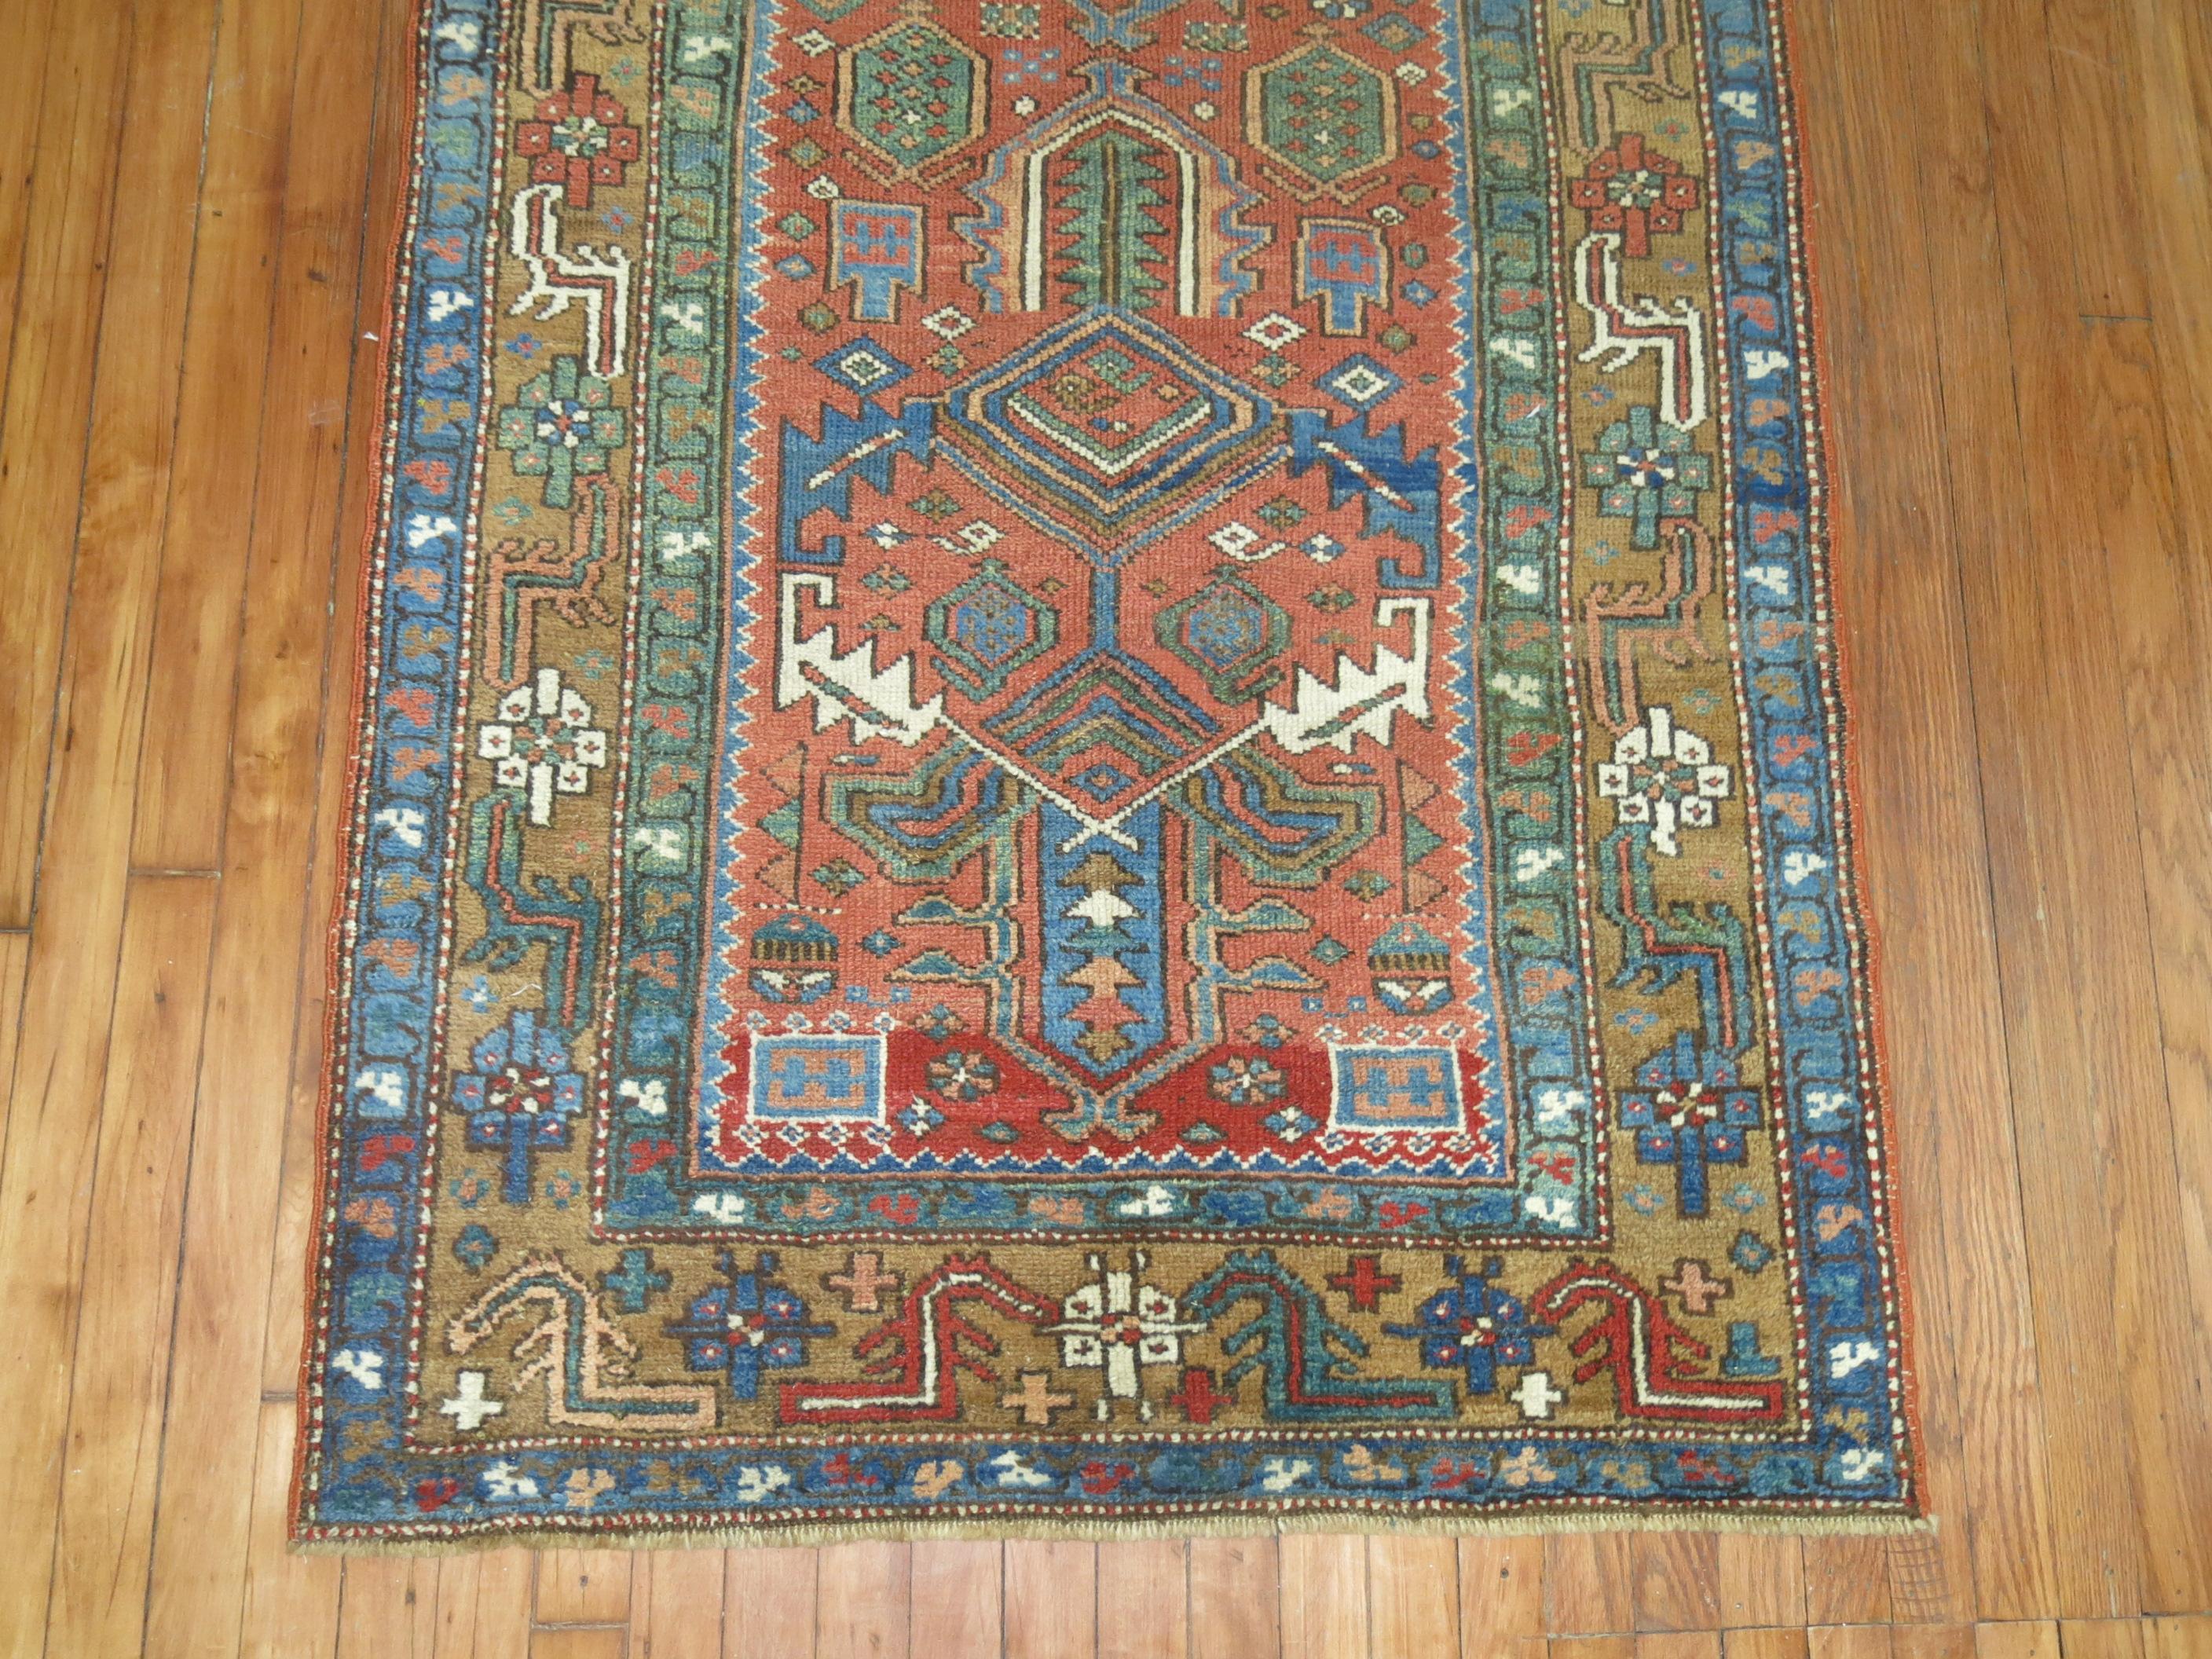 Ein einzigartiger dekorativer antiker persischer Heriz-Läufer.

Der antike Heriz-Teppich mit seinen charakteristischen großflächigen Motiven und seiner breiten Palette an warmen Farben ist wahrscheinlich der beliebteste unter den persischen